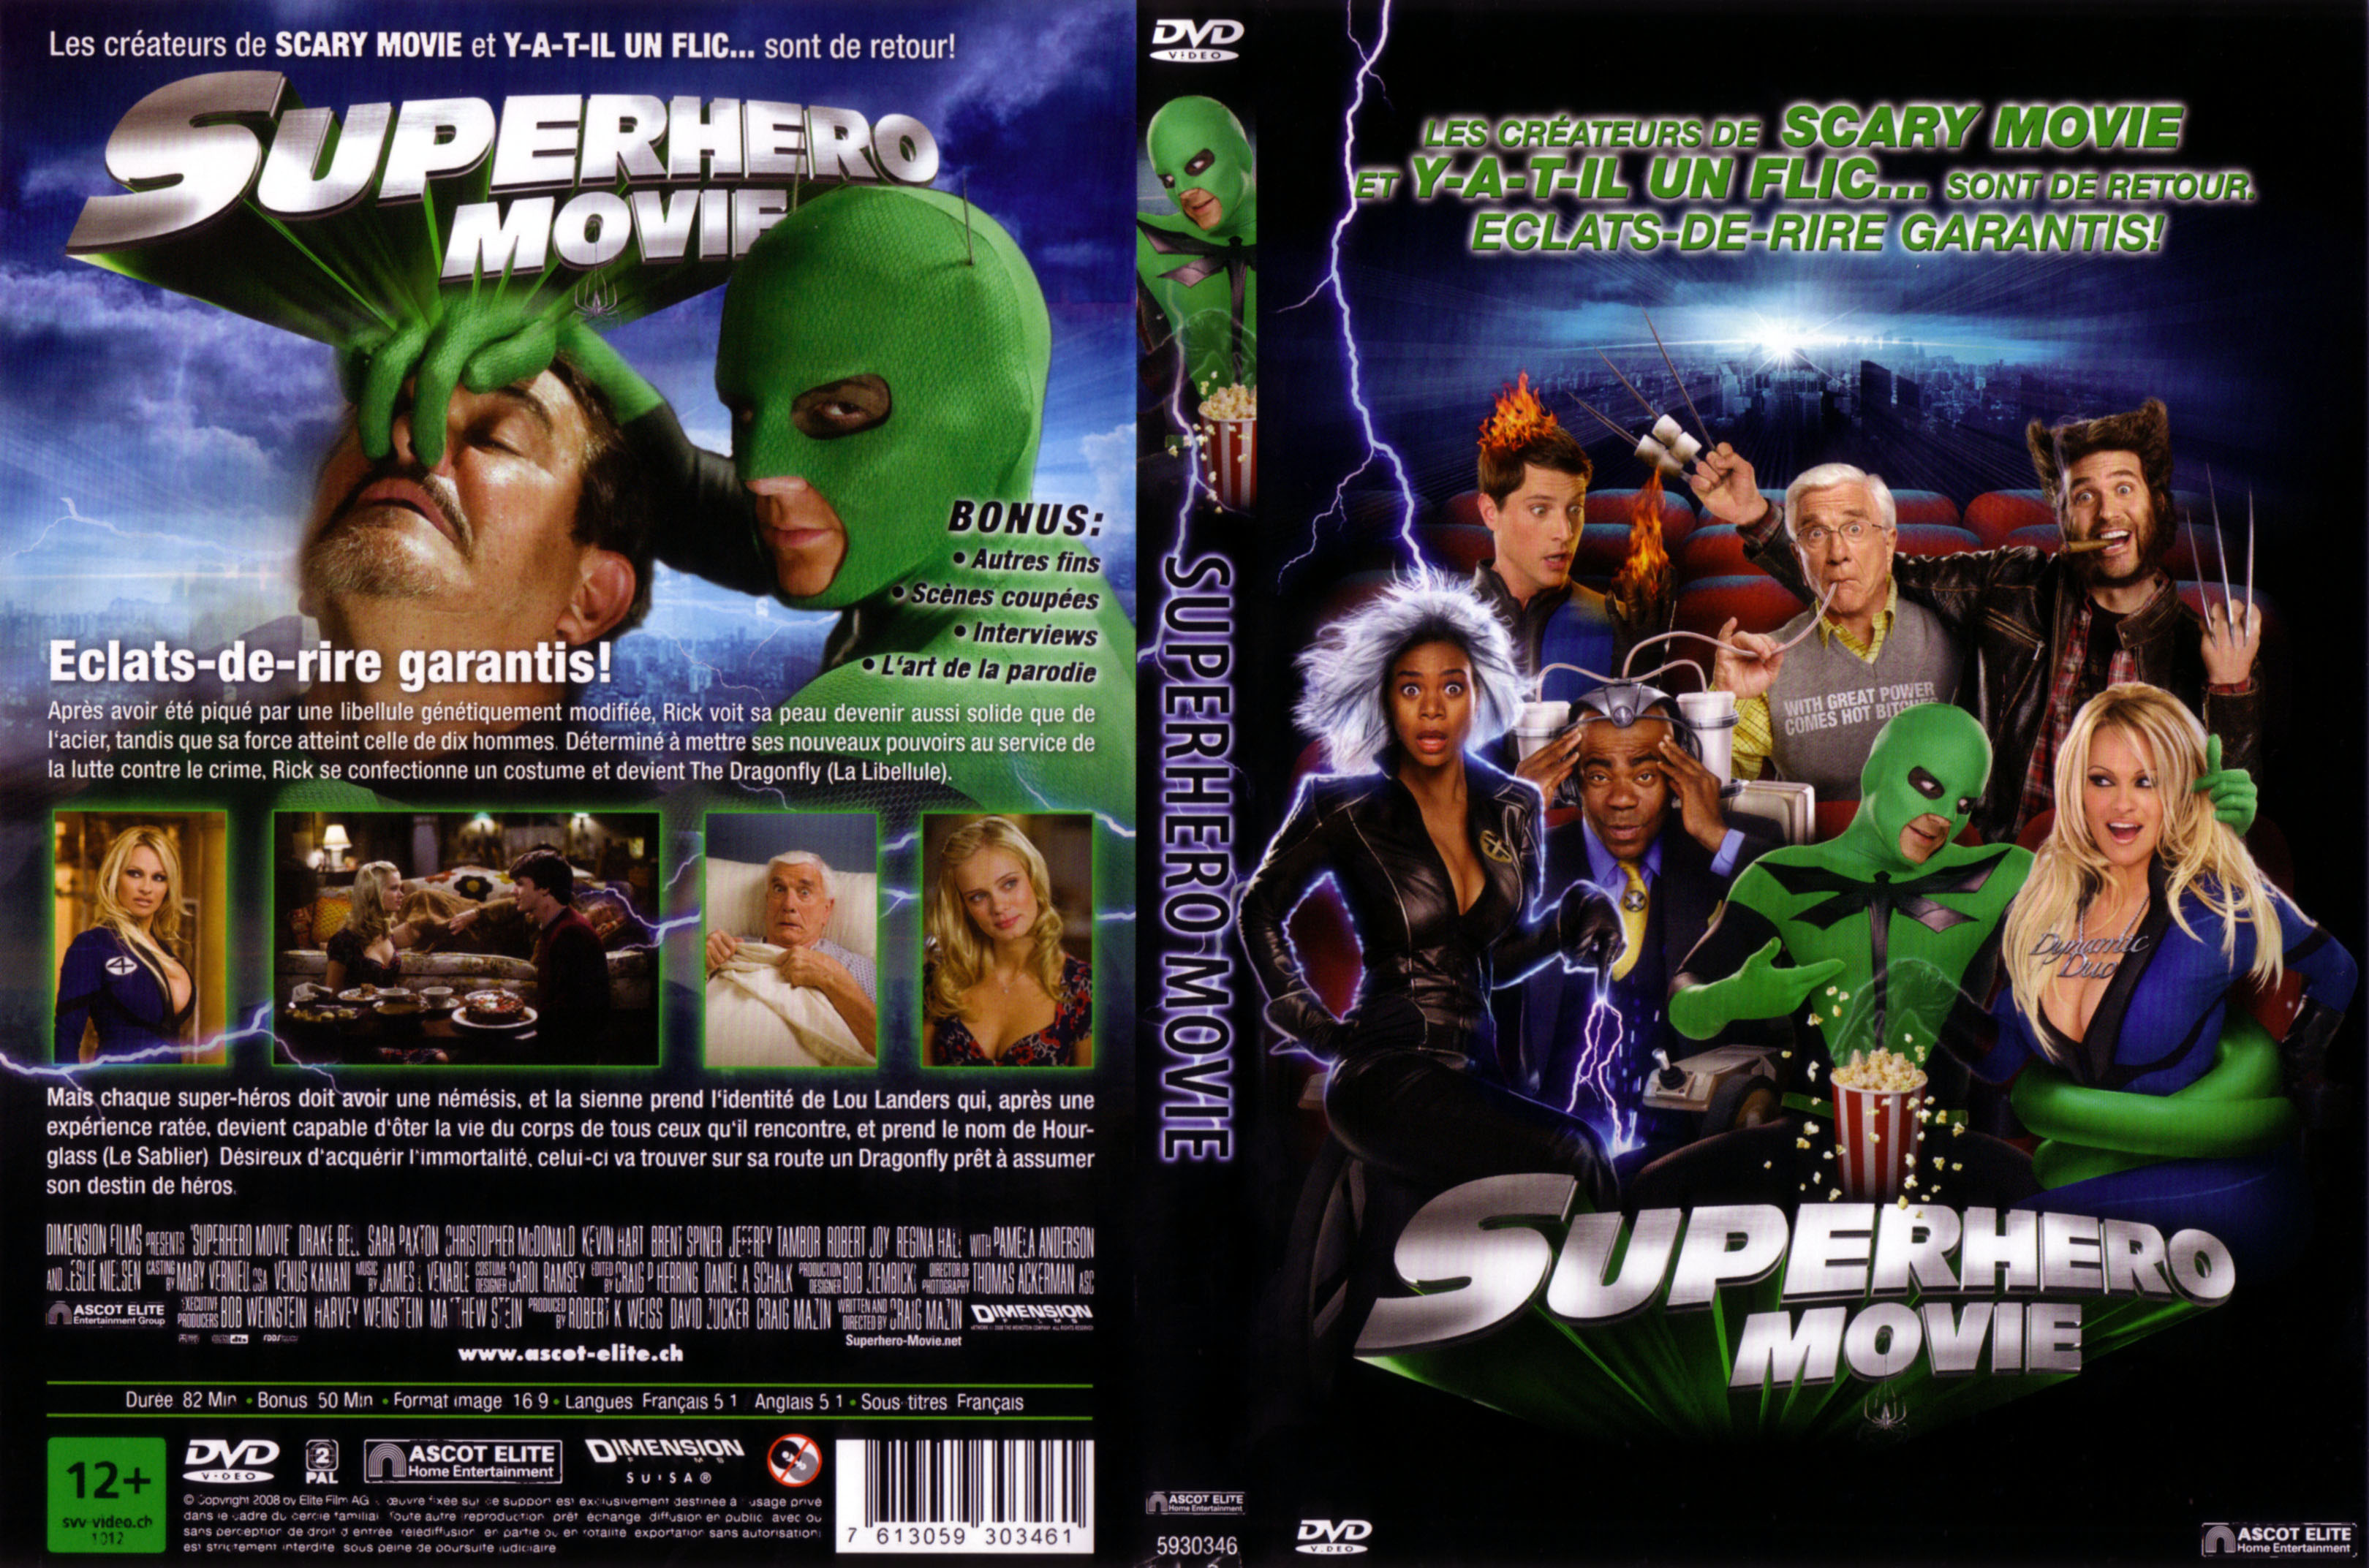 Jaquette DVD Superhero movie v2